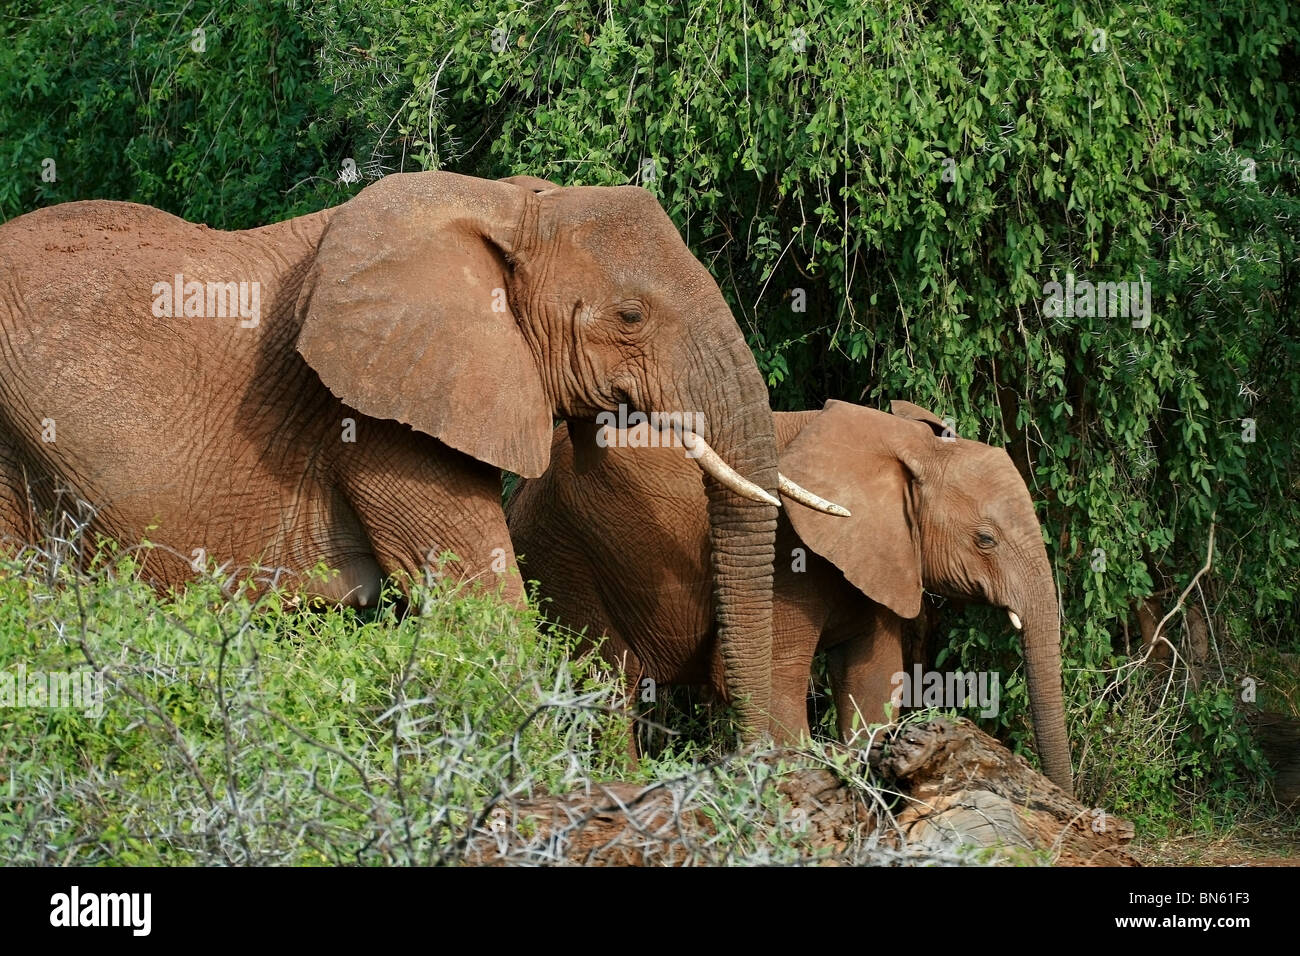 Elephants walking in the jungles of Samburu National Reserve, Kenya Africa Stock Photo